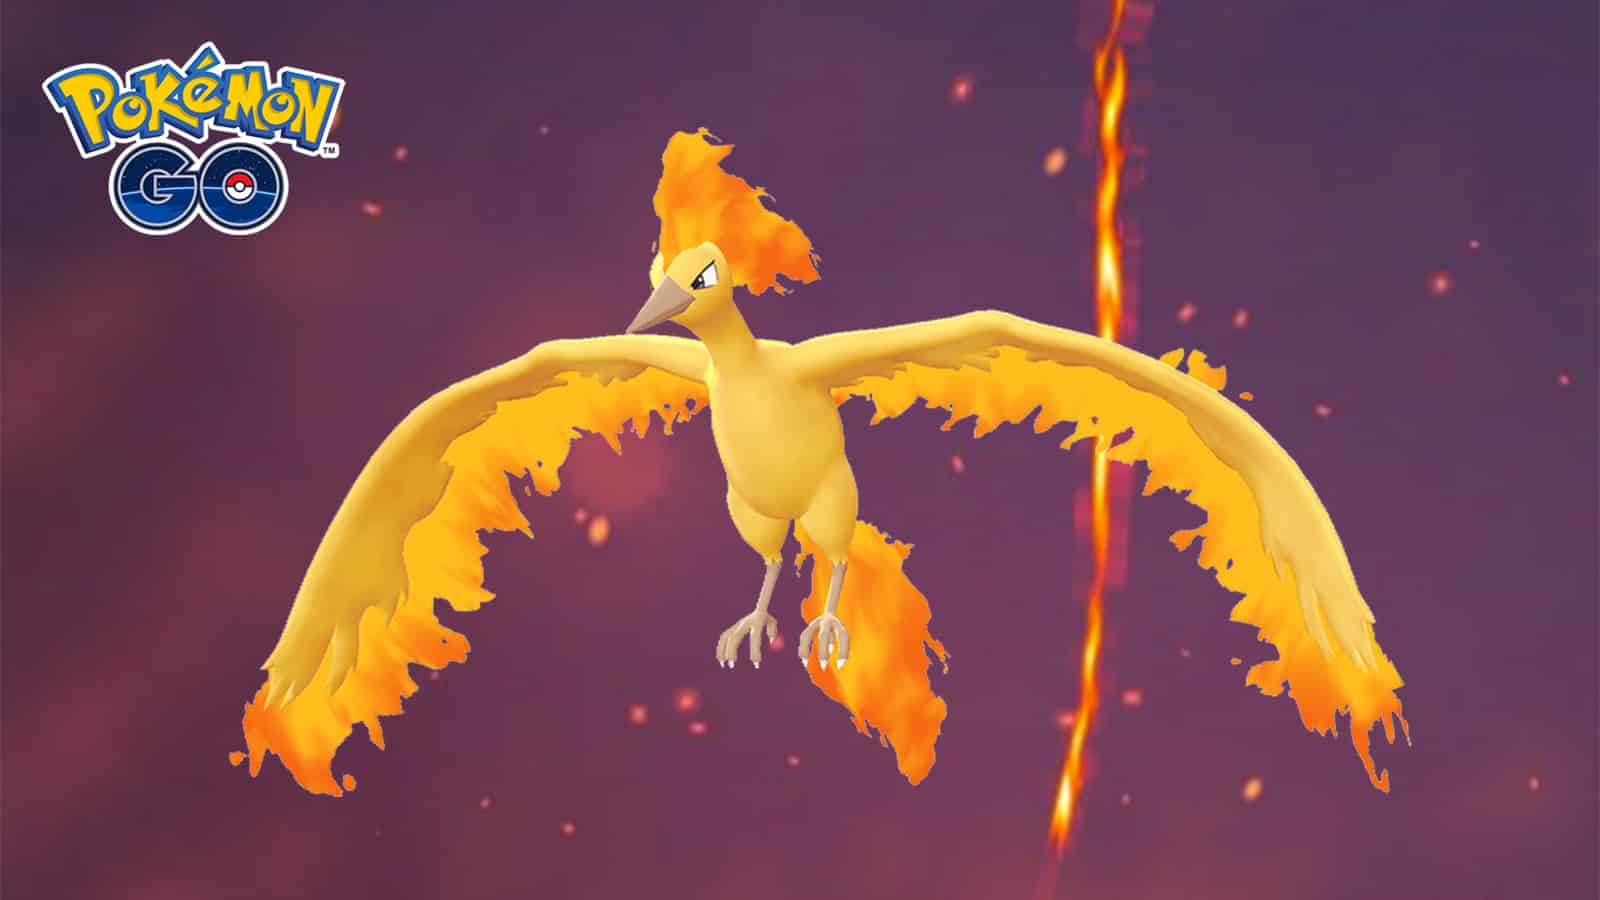 Pokémon GO' Shiny Moltres: How to Catch the Ultra-Rare Legendary Bird